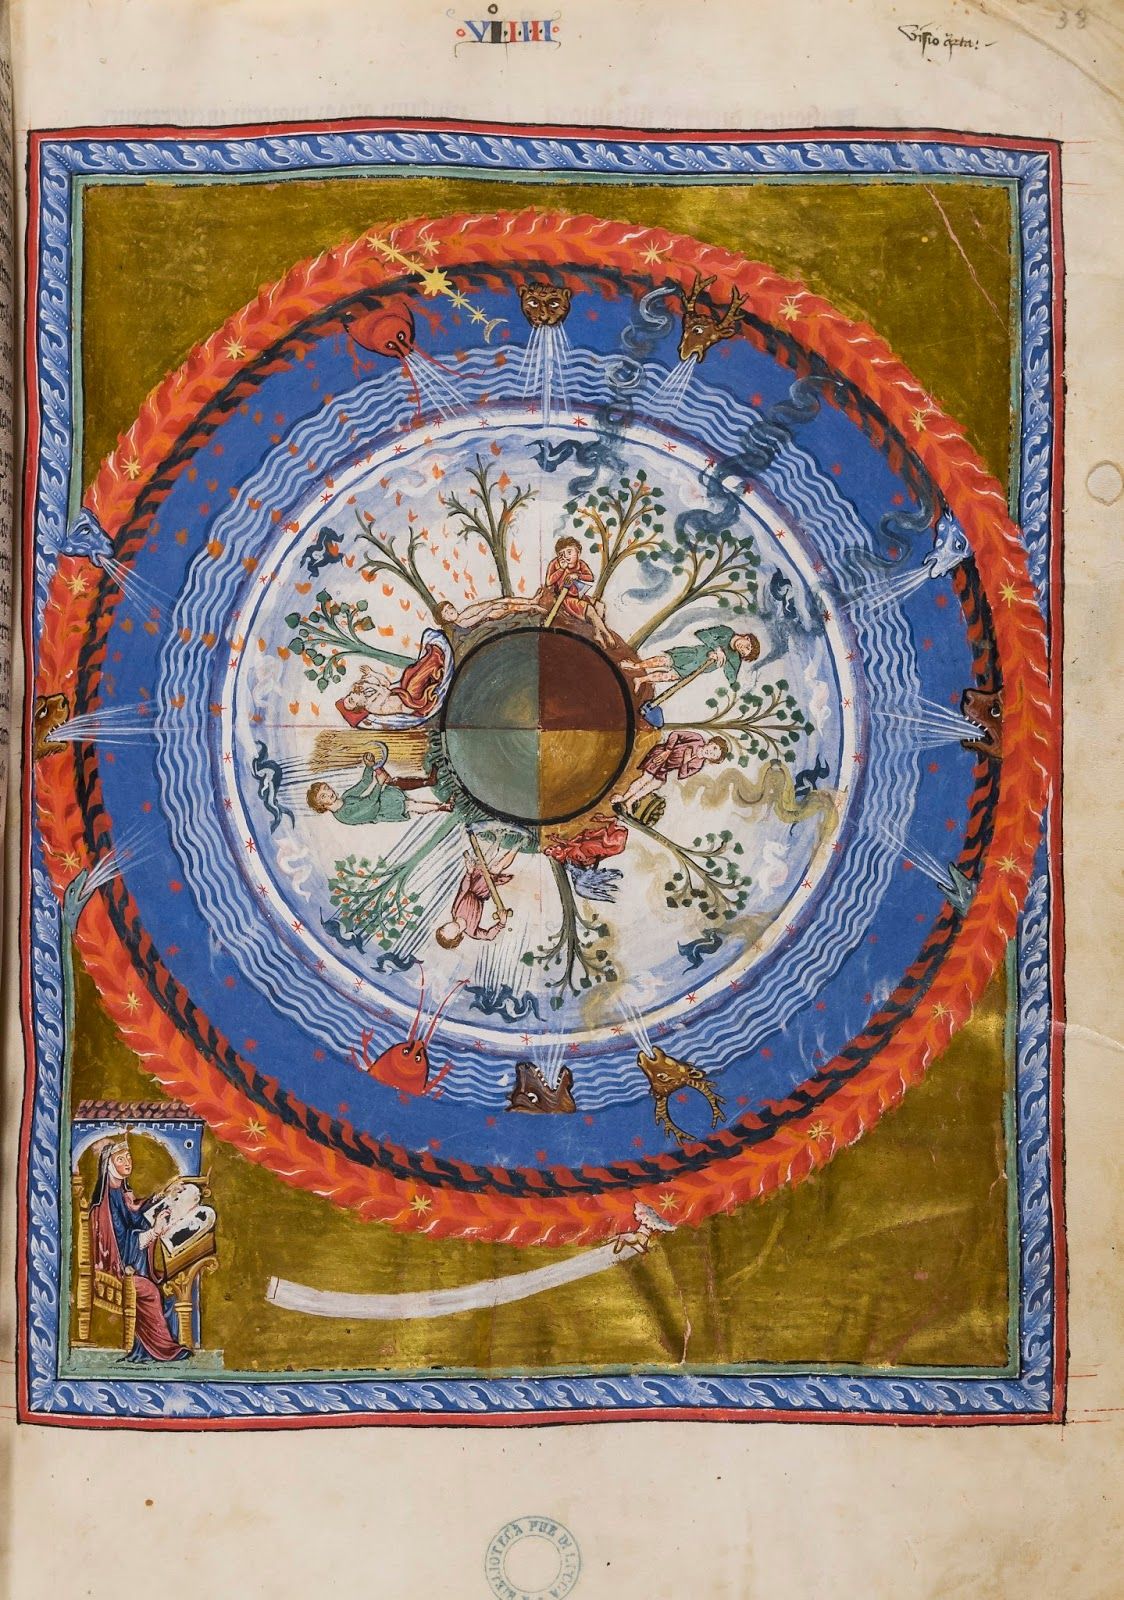 Hildegard von Bingen: Isteni művek könyve (Liber Divinorum Operum), 1150